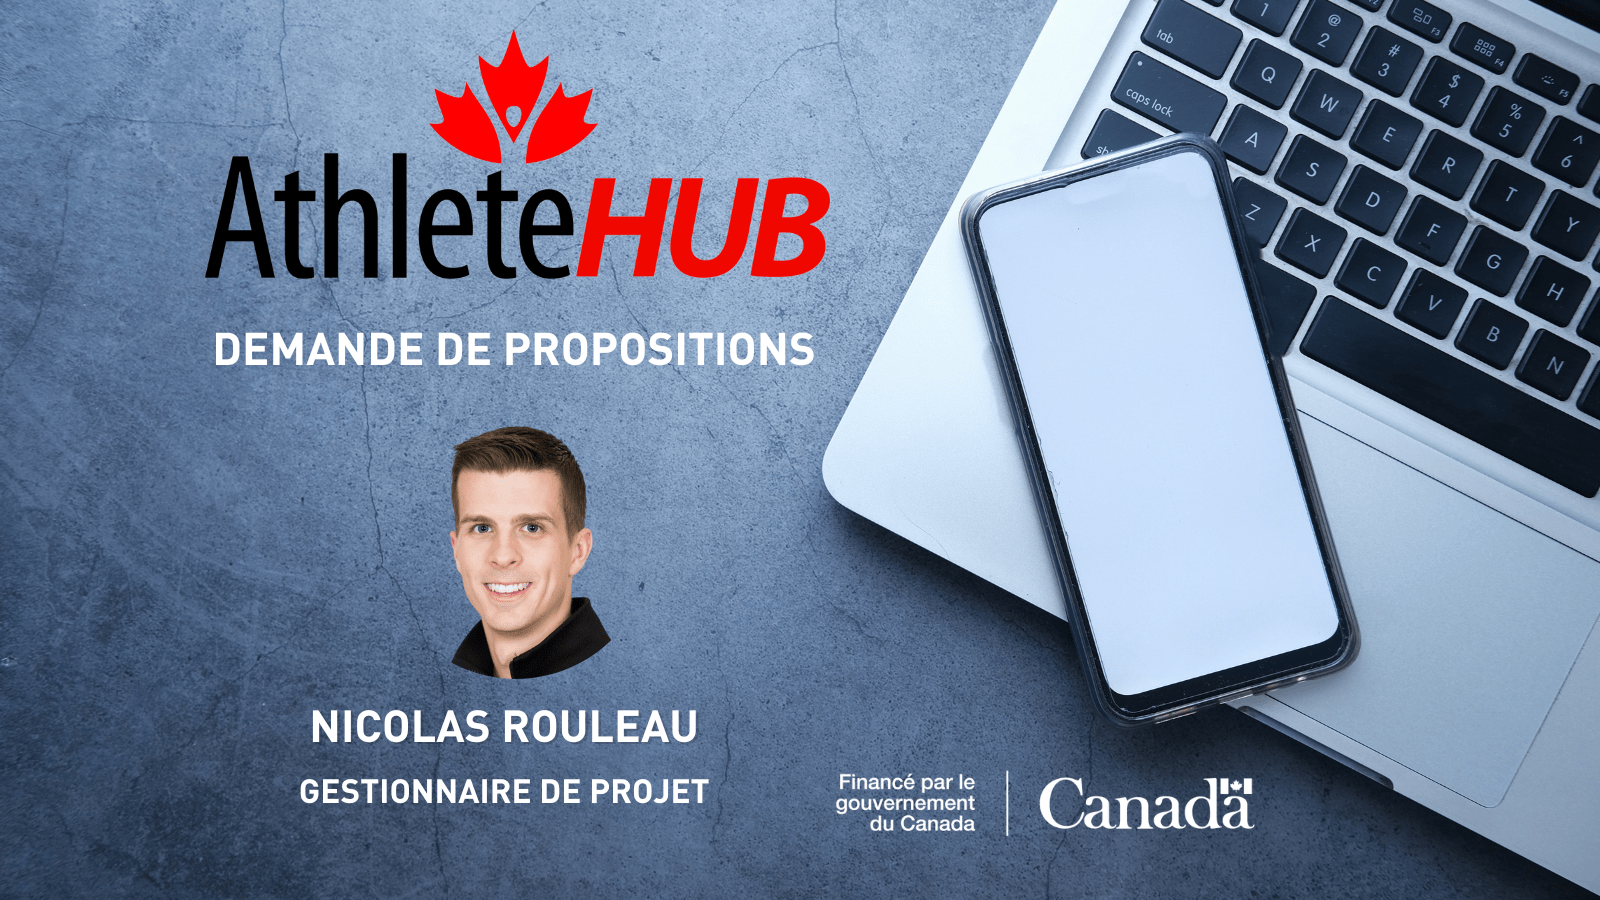 Demande de propositions, l'initiative AthlèteHUB - Nicolas Rouleau, Gestionnaire de projet